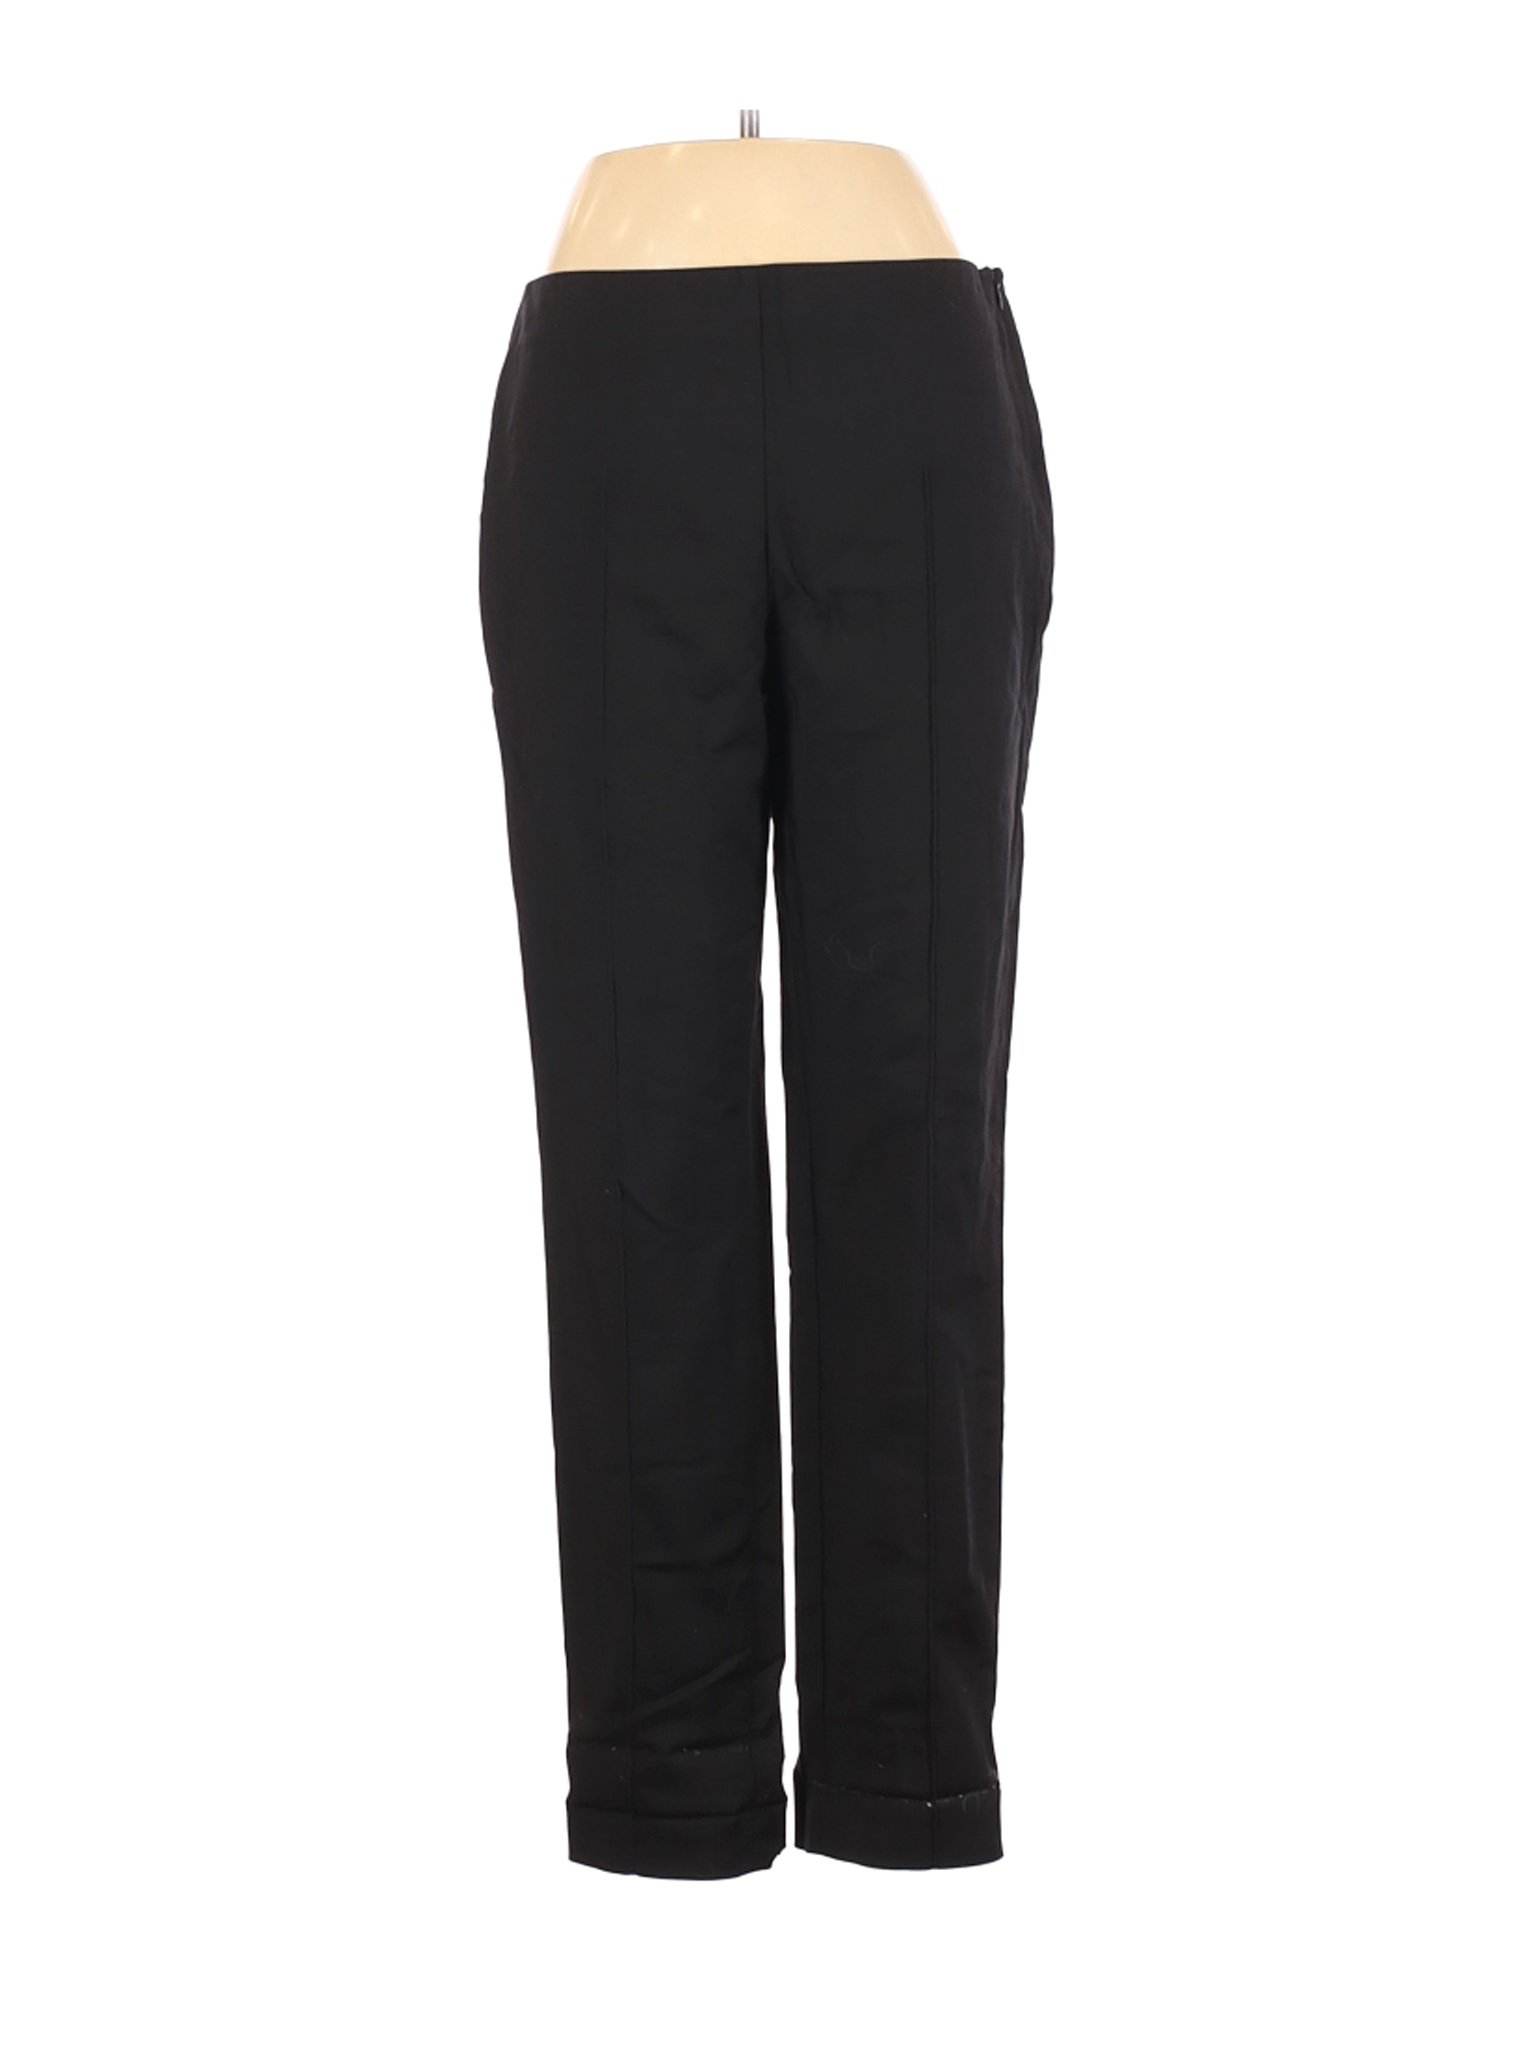 Saks Fifth Avenue Women Black Casual Pants 6 | eBay